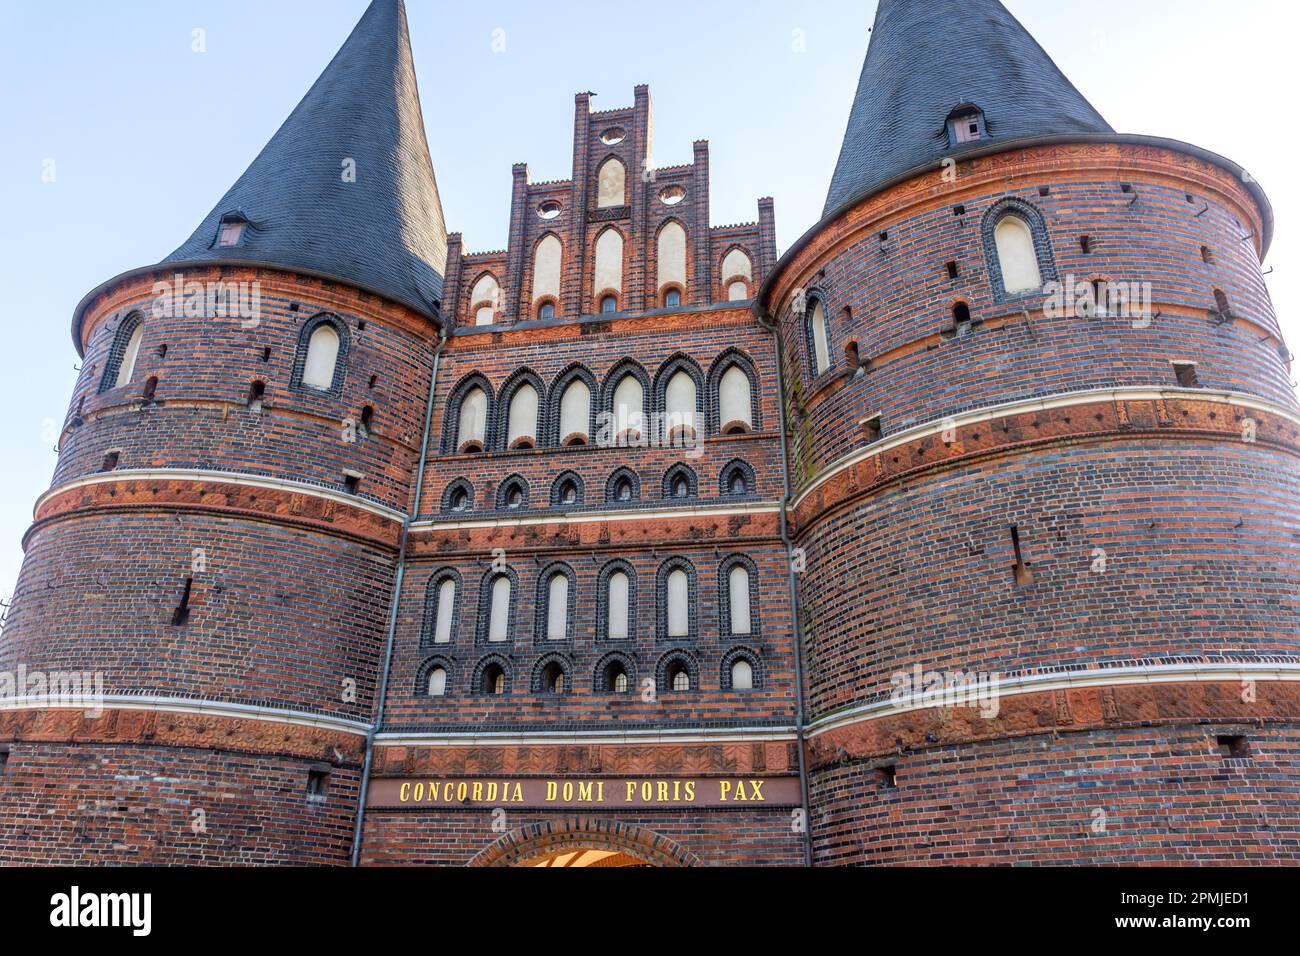 15th century Holstentor (Holsten Gate), Holstentorplatz, Lübeck, Schleswig-Holstein, Federal Republic of Germany Stock Photo